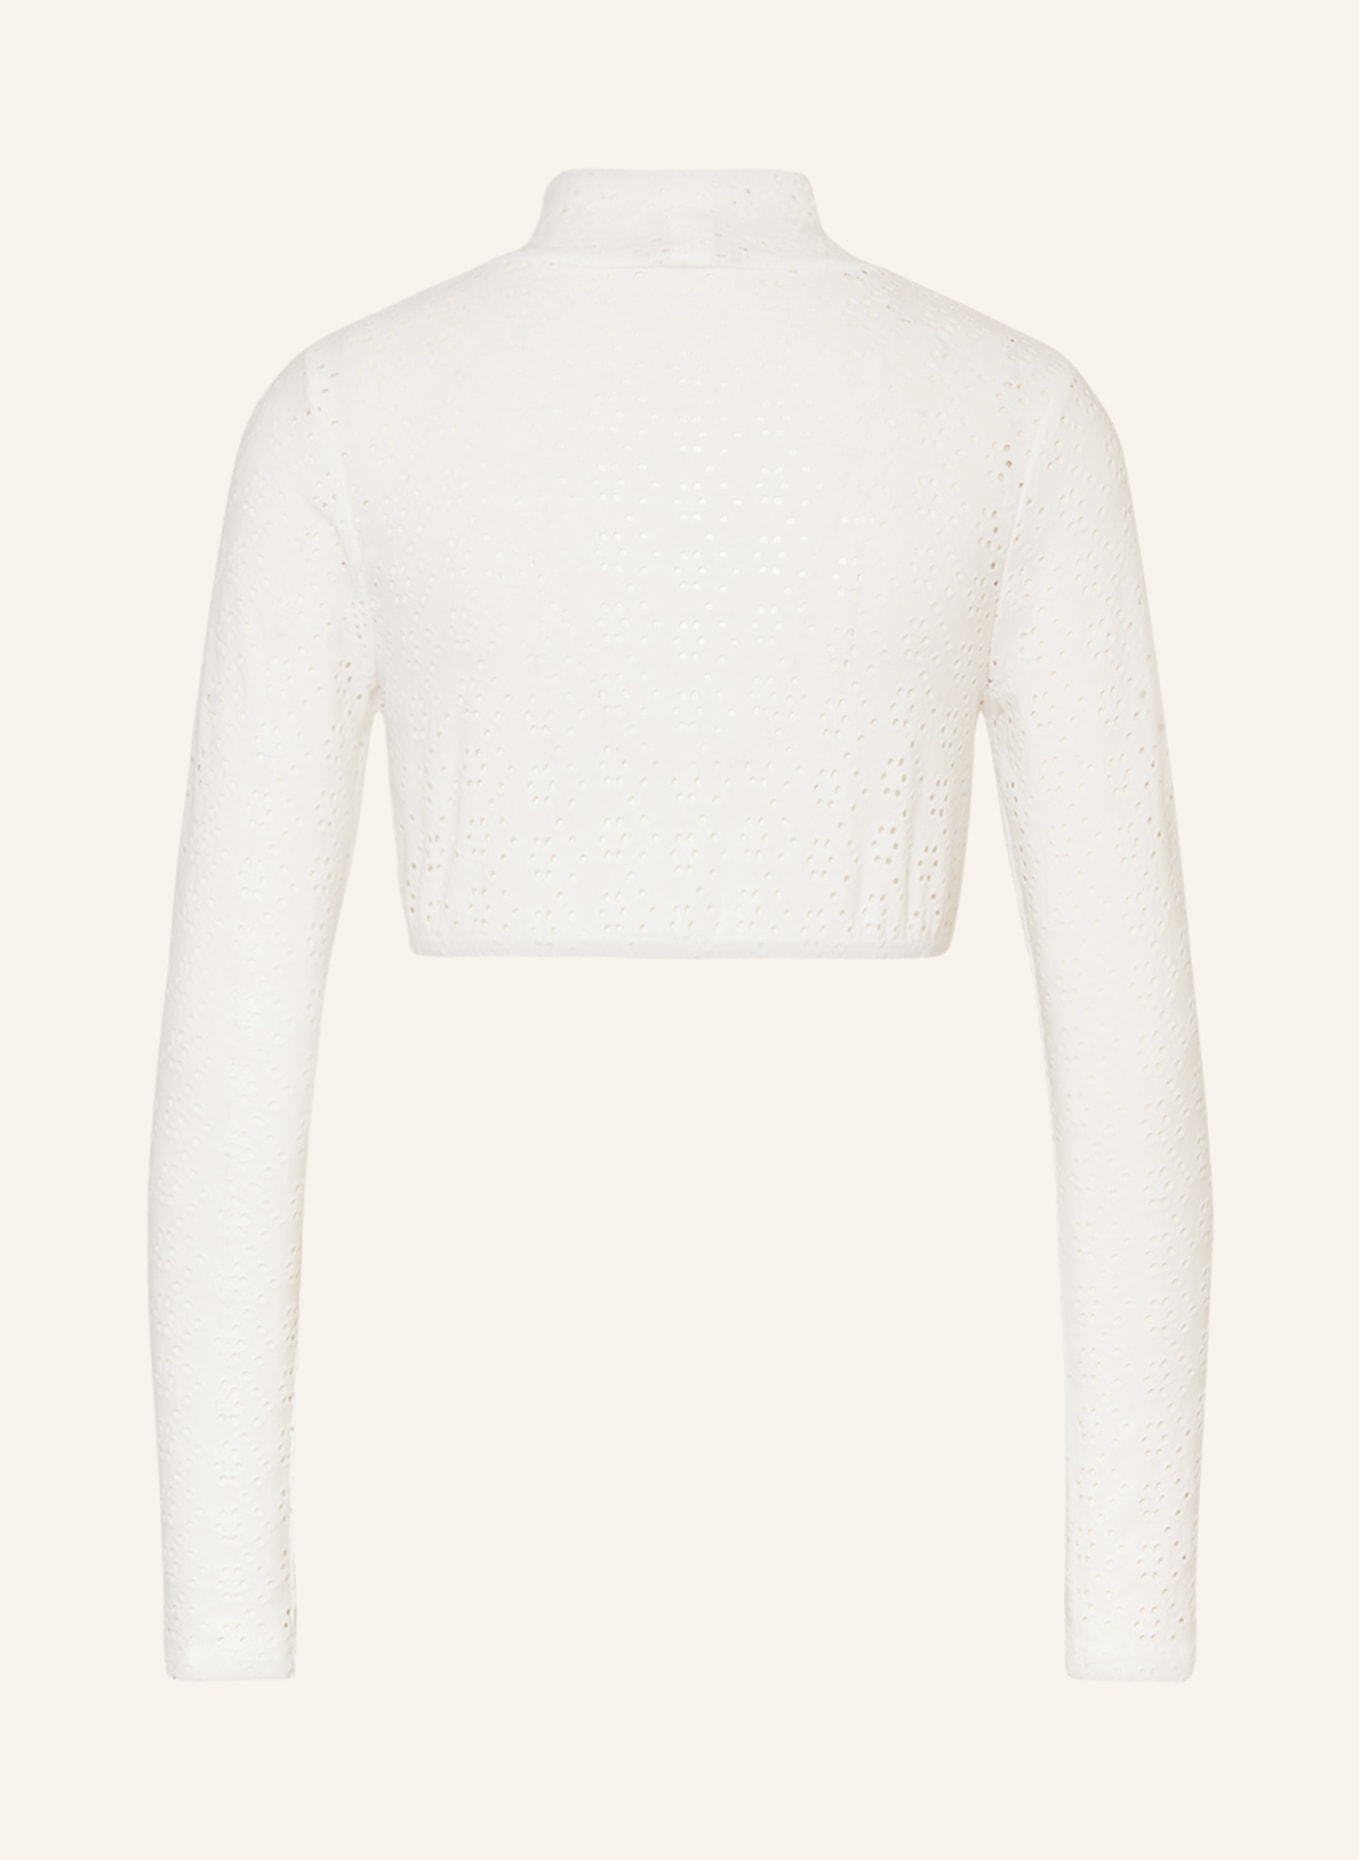 KRÜGER Dirndl blouse in broderie anglaise, Color: ECRU (Image 2)